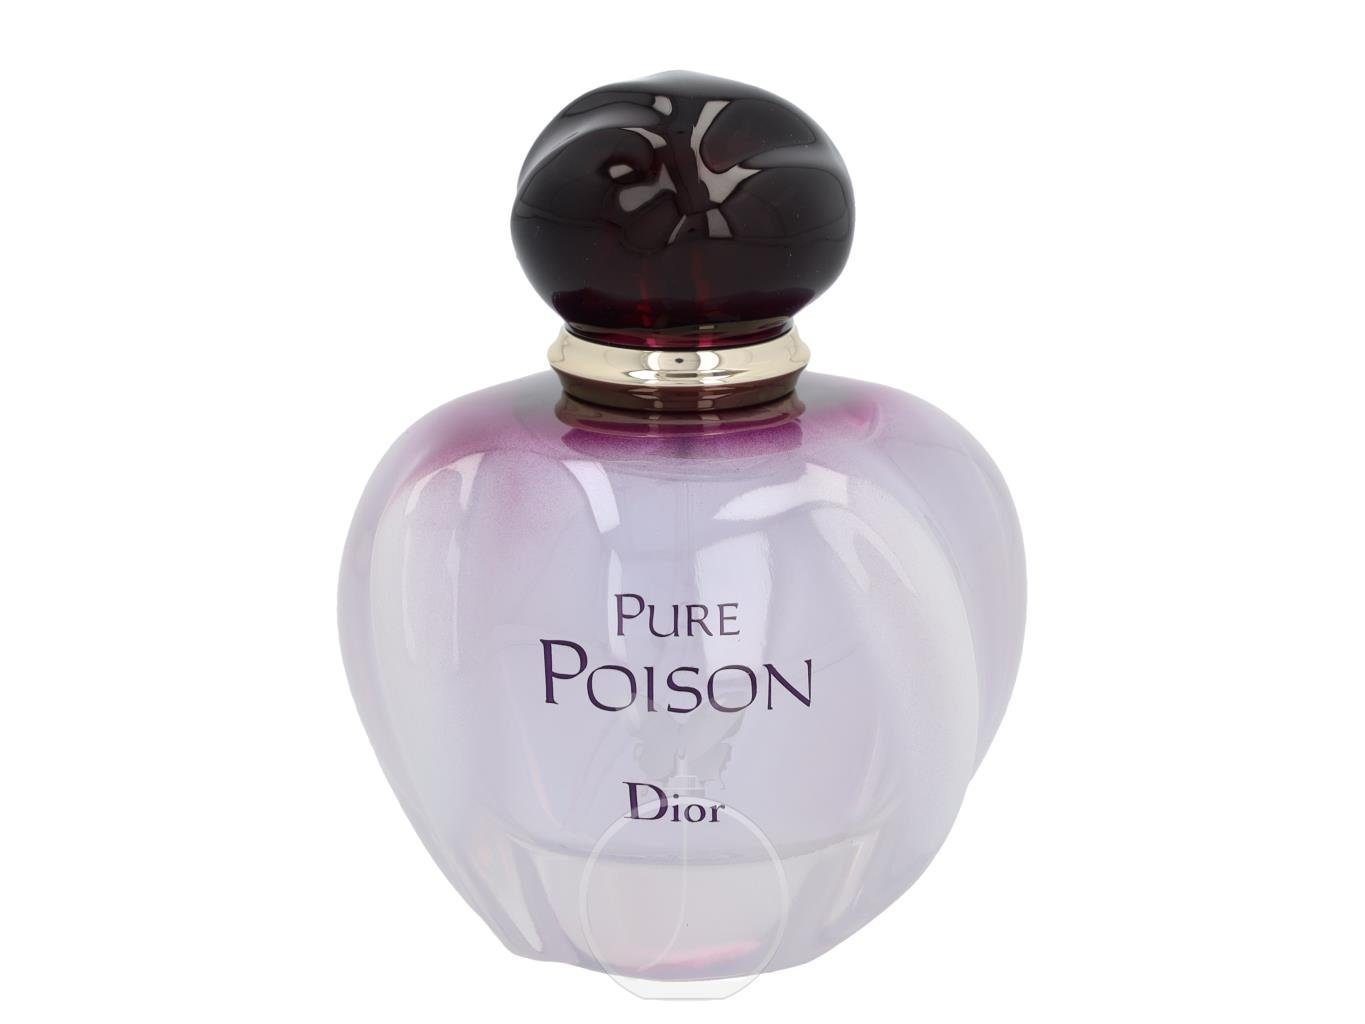 Eau Dior de Pure Parfum Parfum 50 ml Eau Dior Poison Christian de